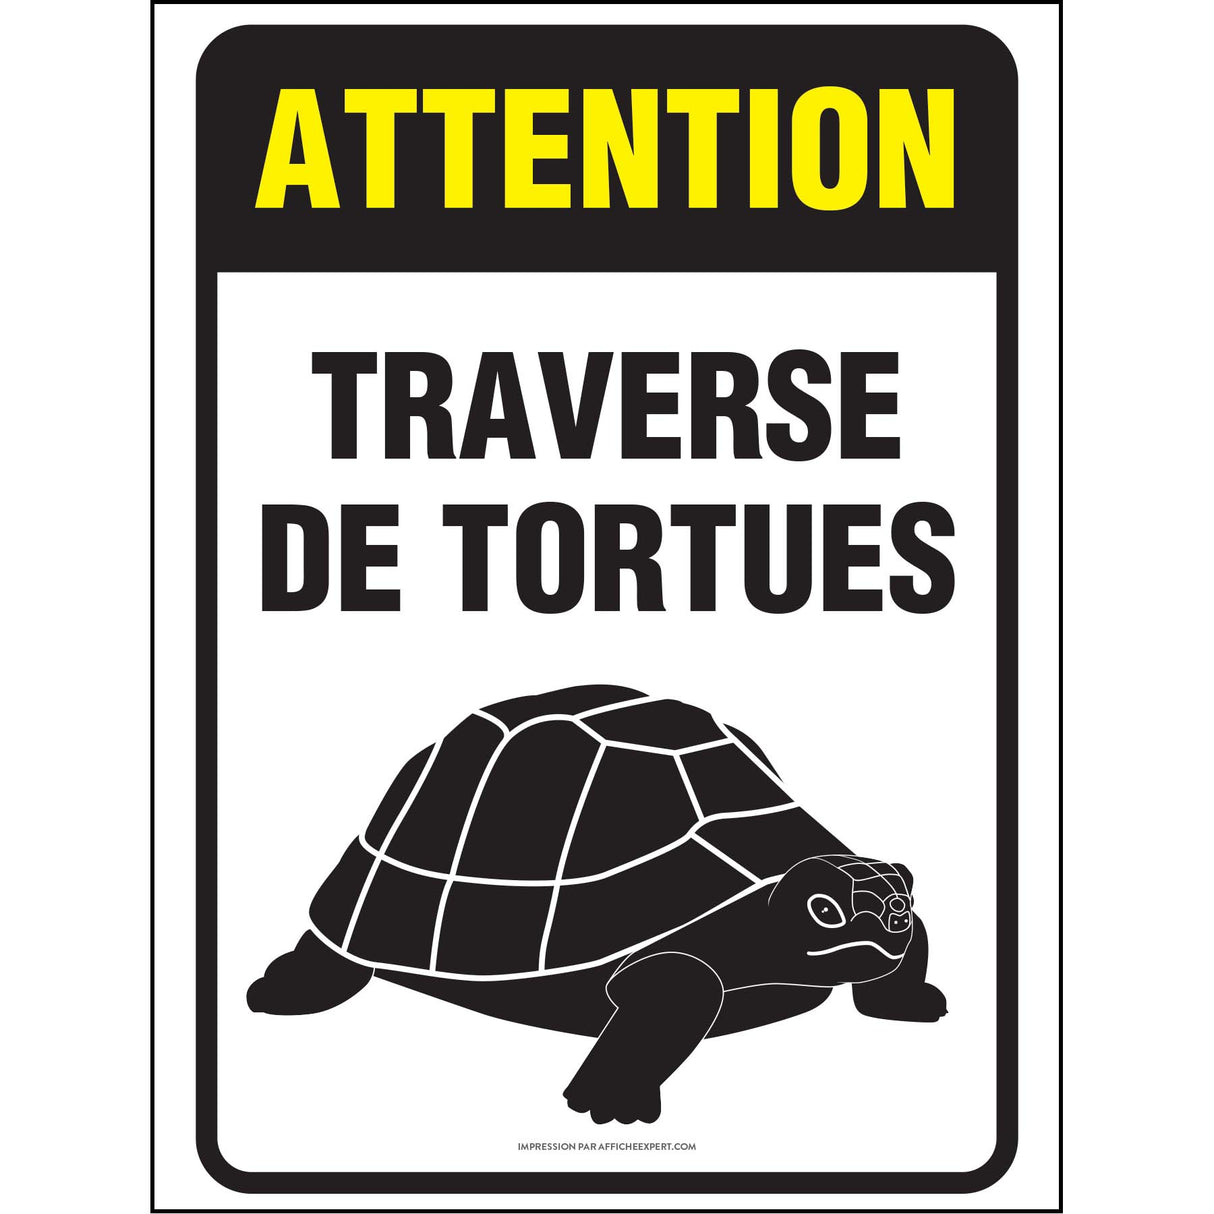 Attention - Traverse de tortues